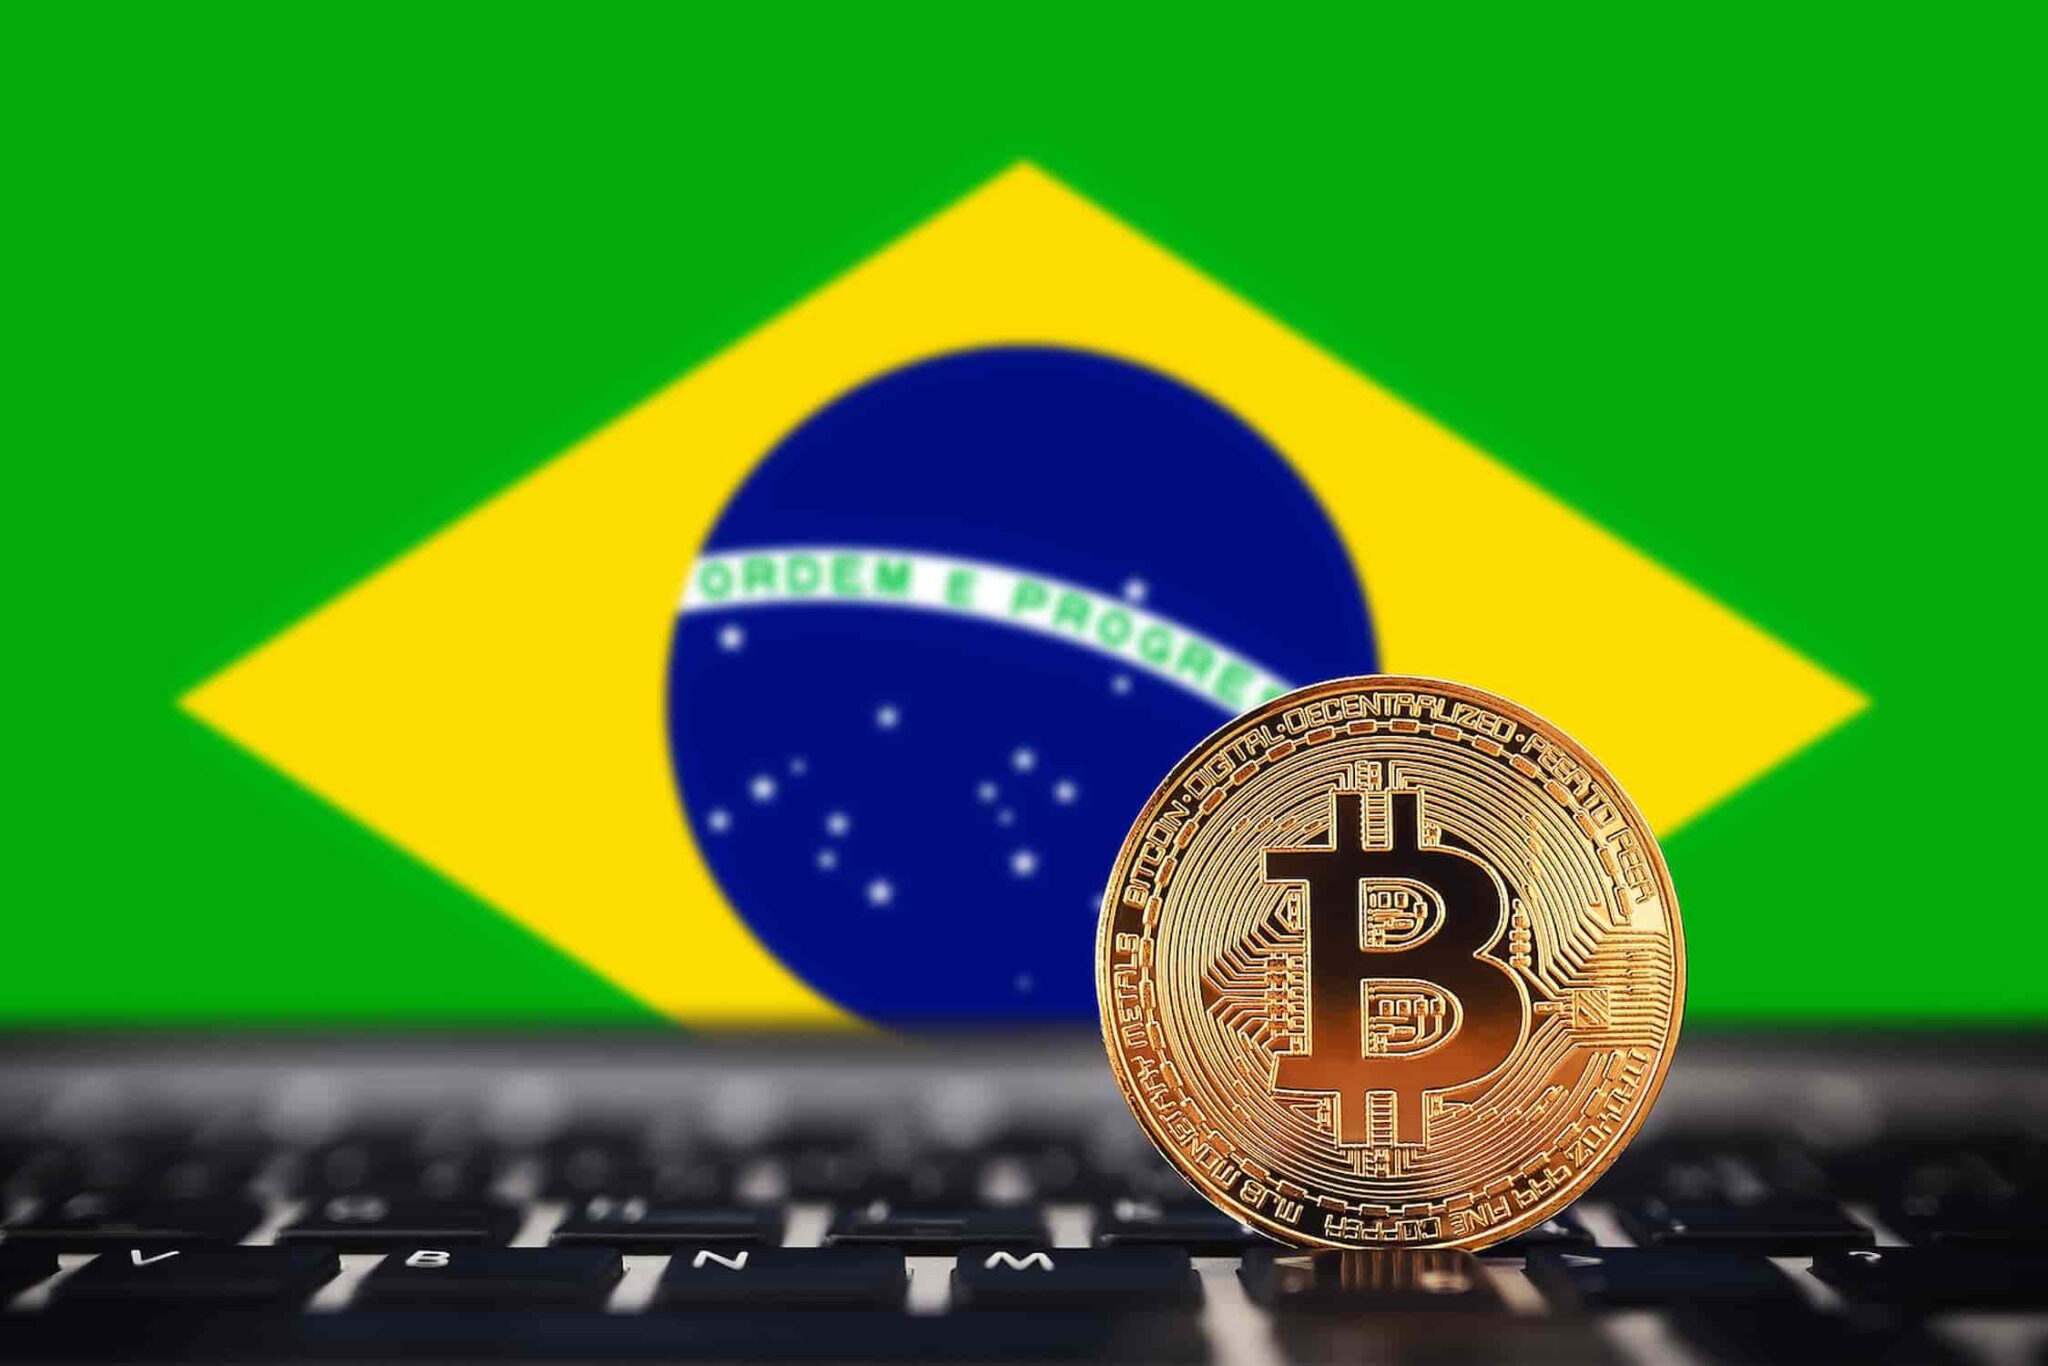 brazil crypto exchange ico